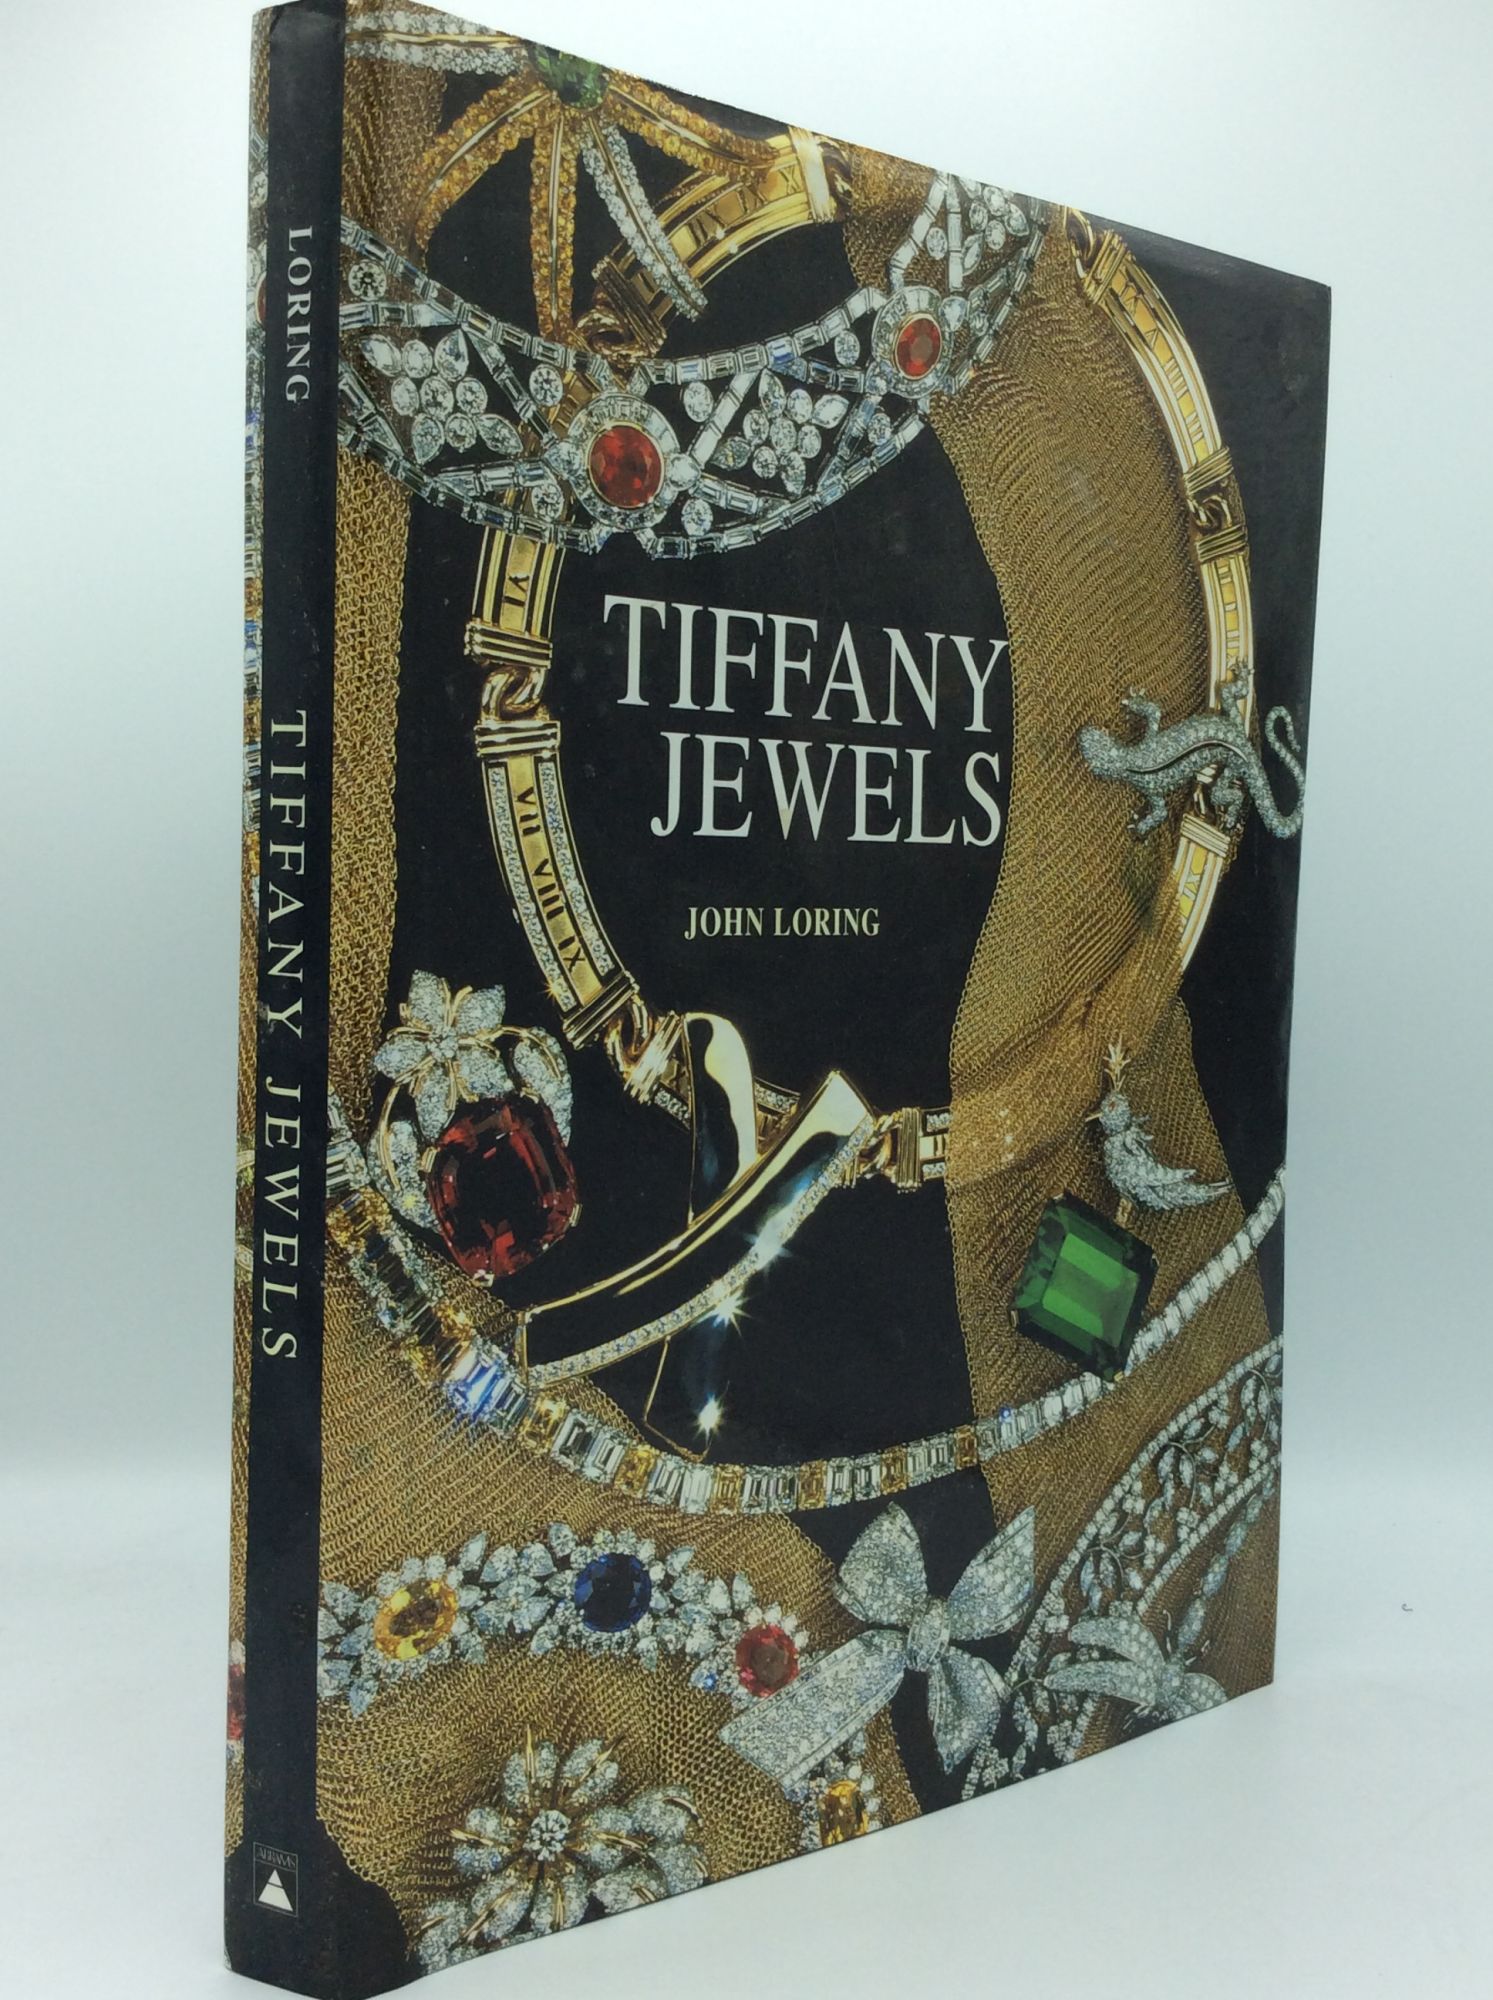 TIFFANY JEWELS by John Loring on Kubik Fine Books Ltd